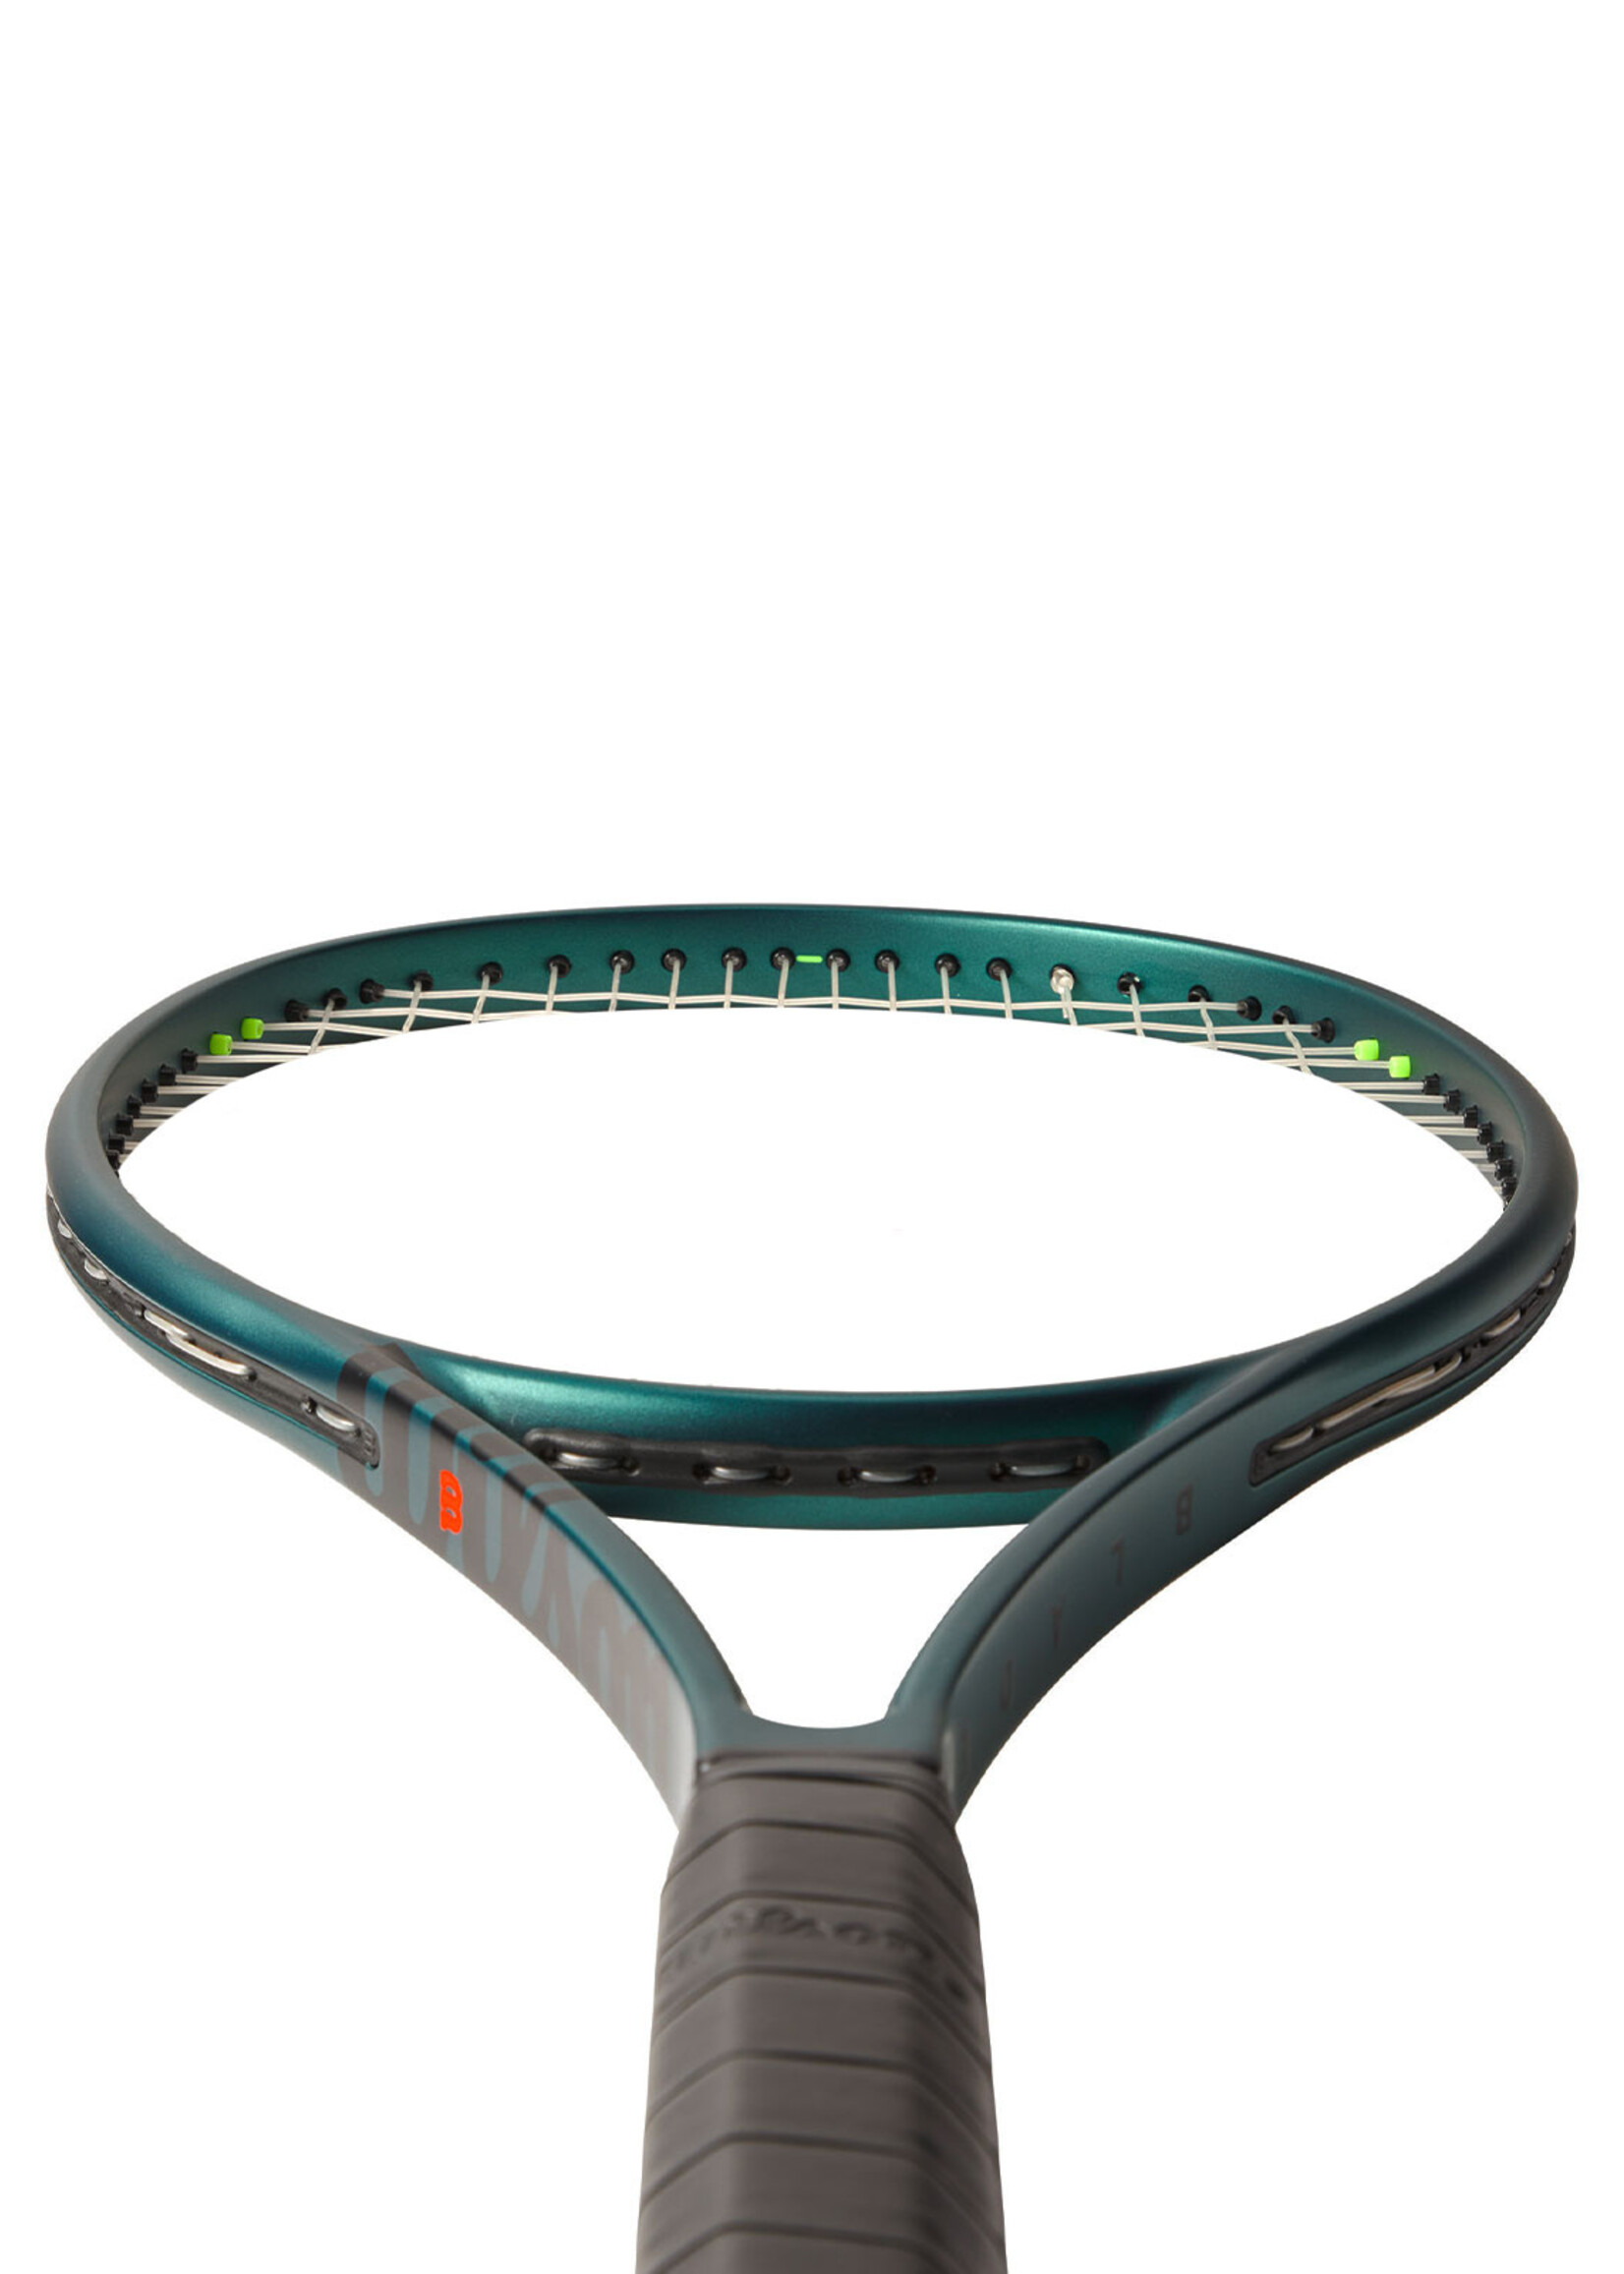 Wilson Wilson Blade 98 V9 (305g) 16x19 Tennis Racquet